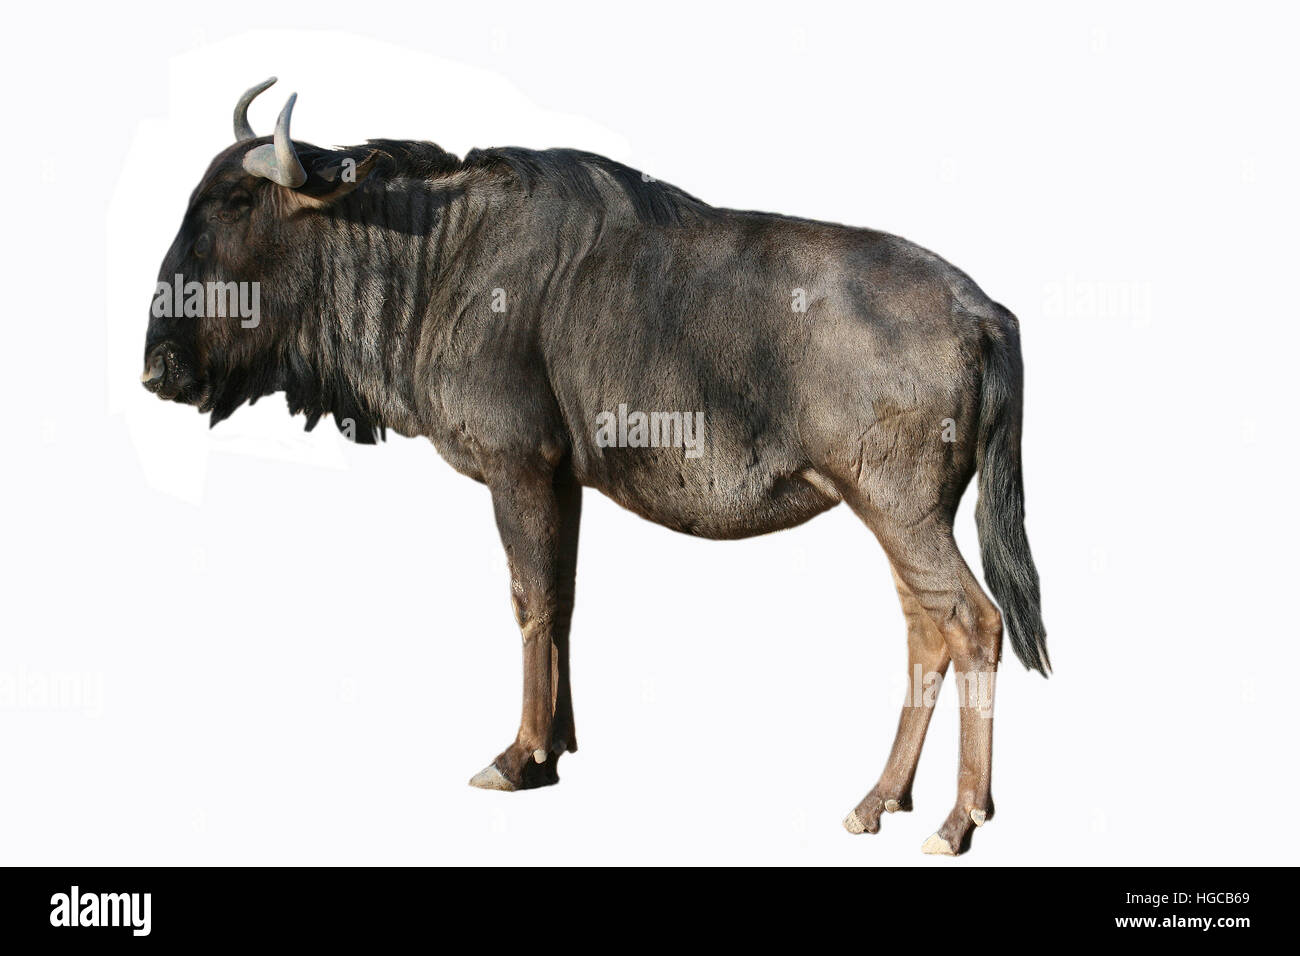 Blue wildebeest (Connochaetes taurinus) Stock Photo